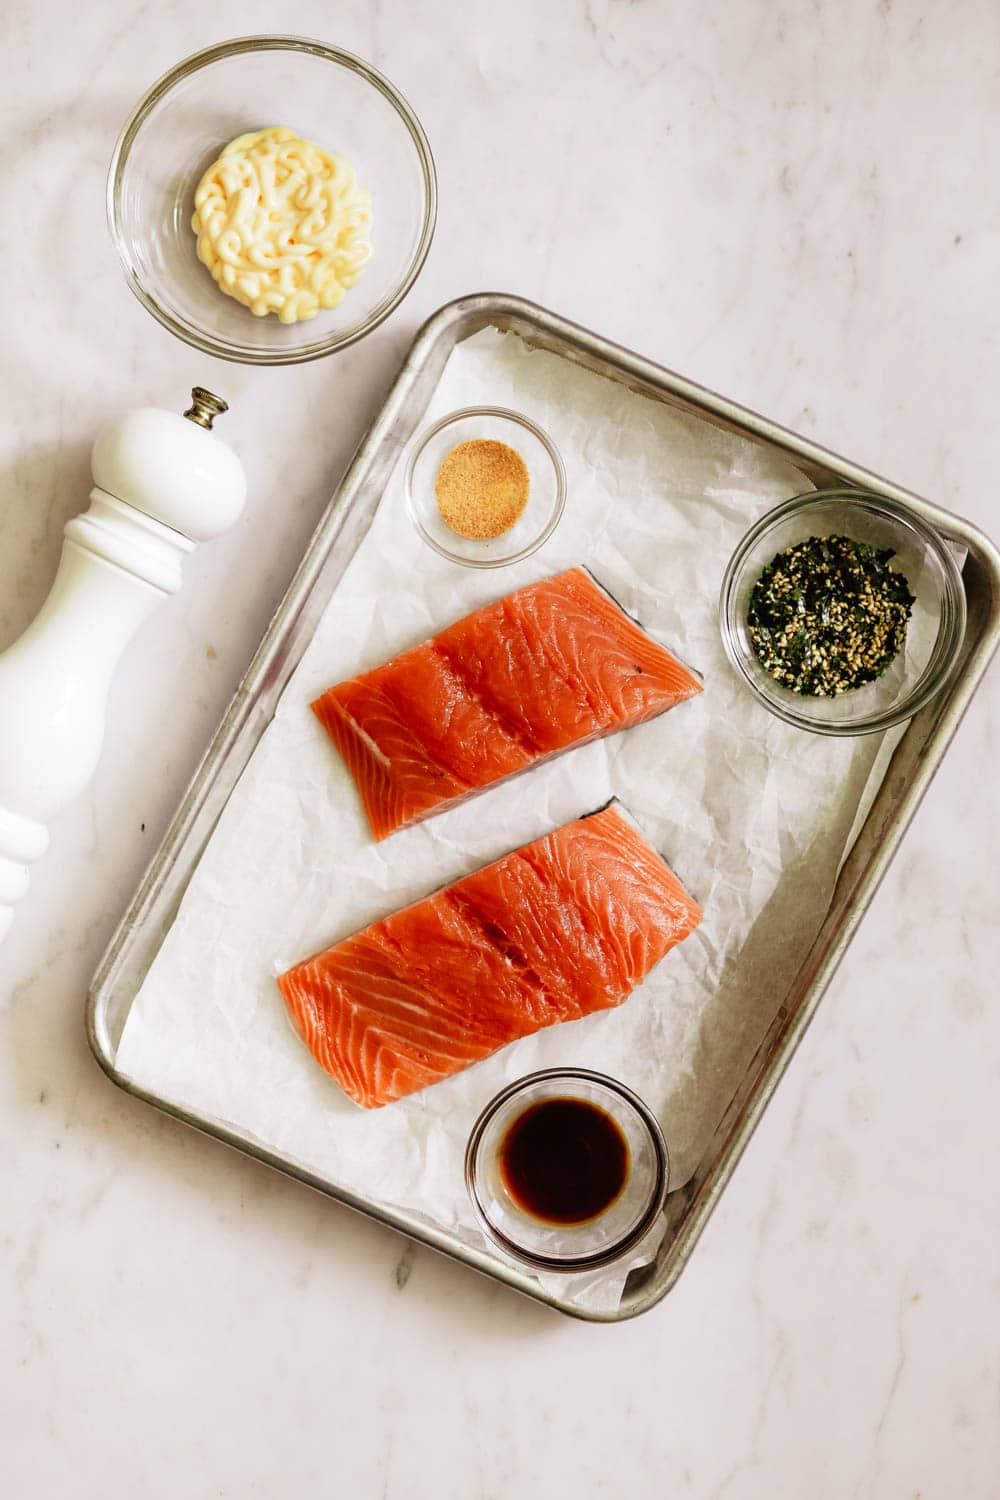 Ingredients for Furikake Salmon, with salmon filets, garlic powder, soy sauce, furikake, kewpie mayo, and black pepper.